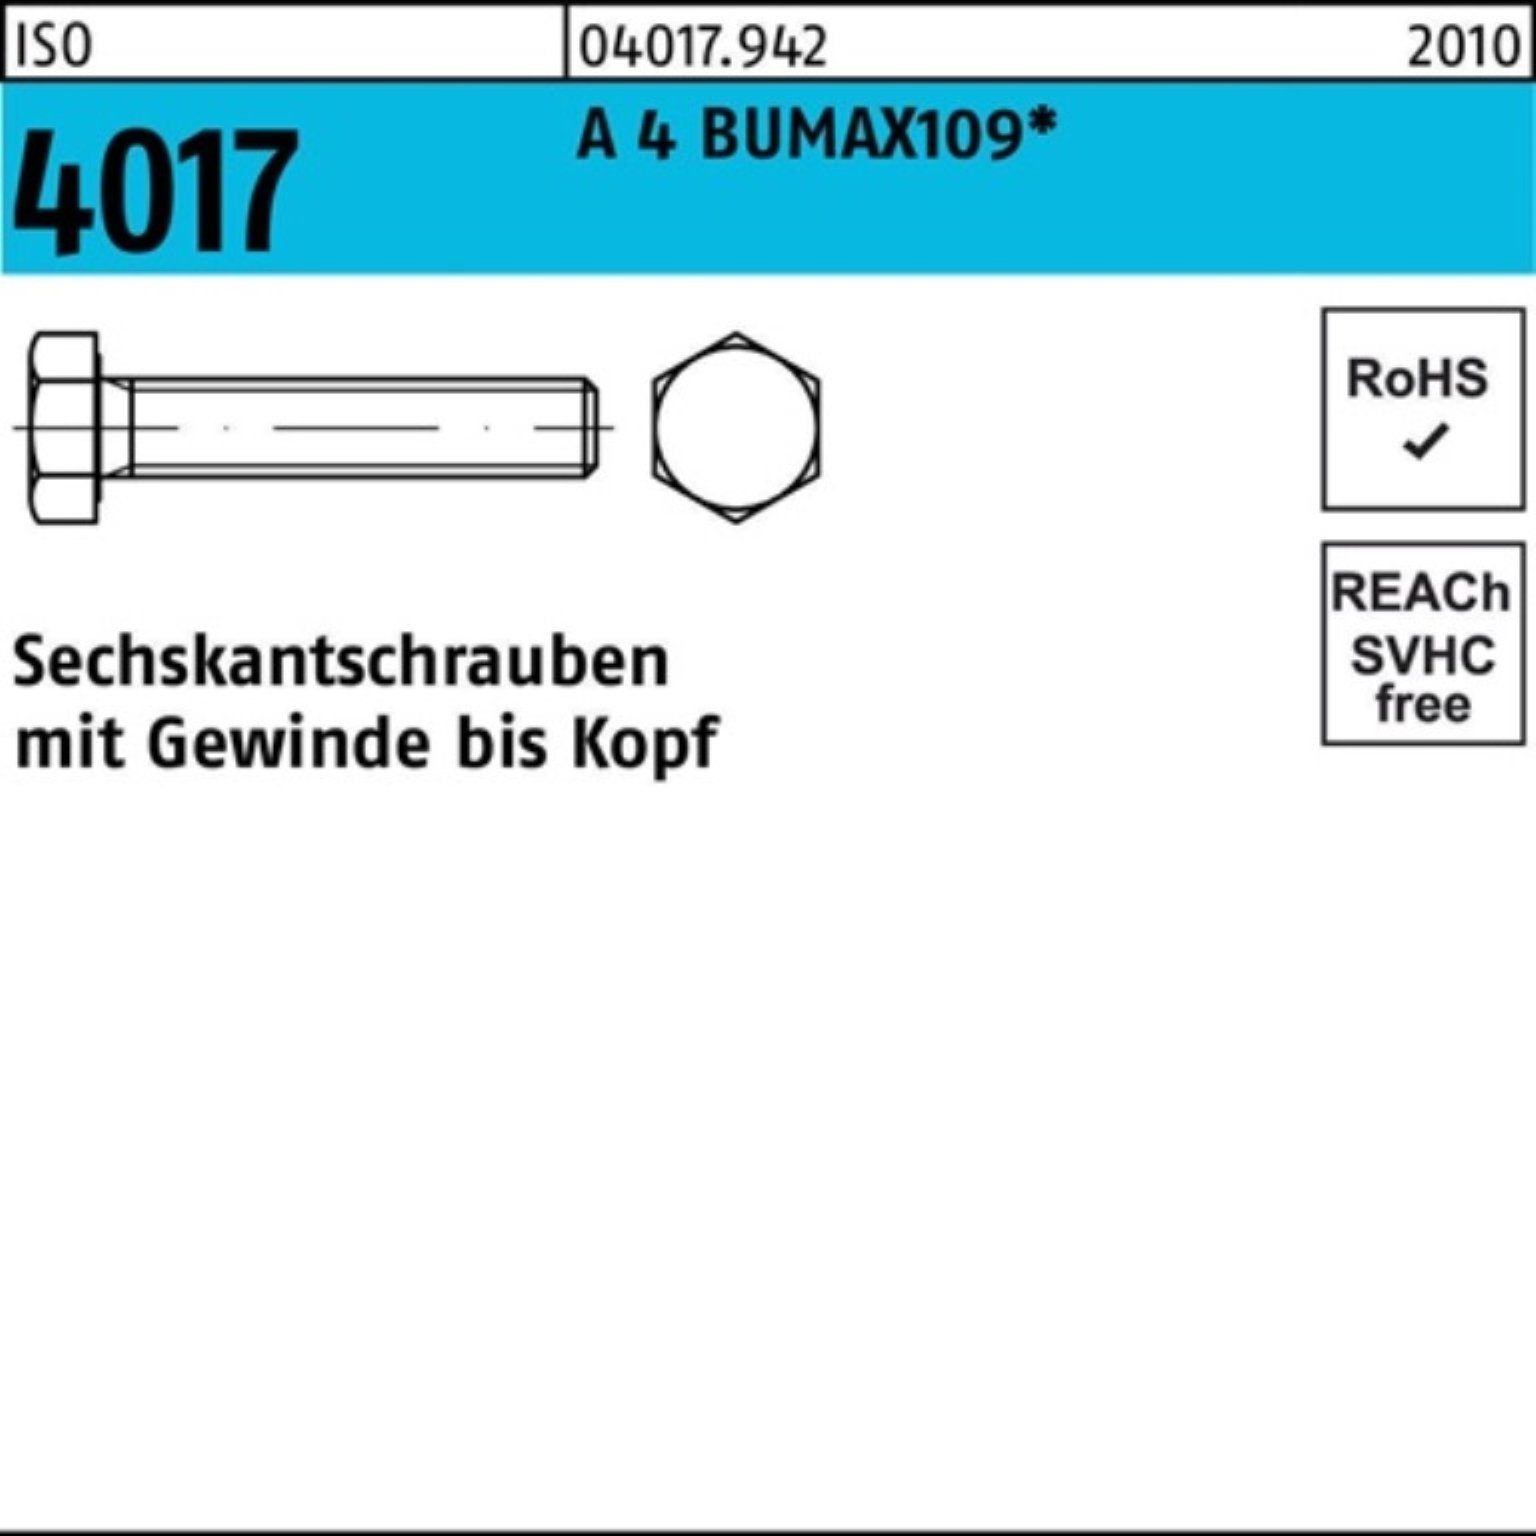 Bufab Sechskantschraube 100er Pack Sechskantschraube ISO 4017 VG M6x 25 A 4 BUMAX109 100 Stüc